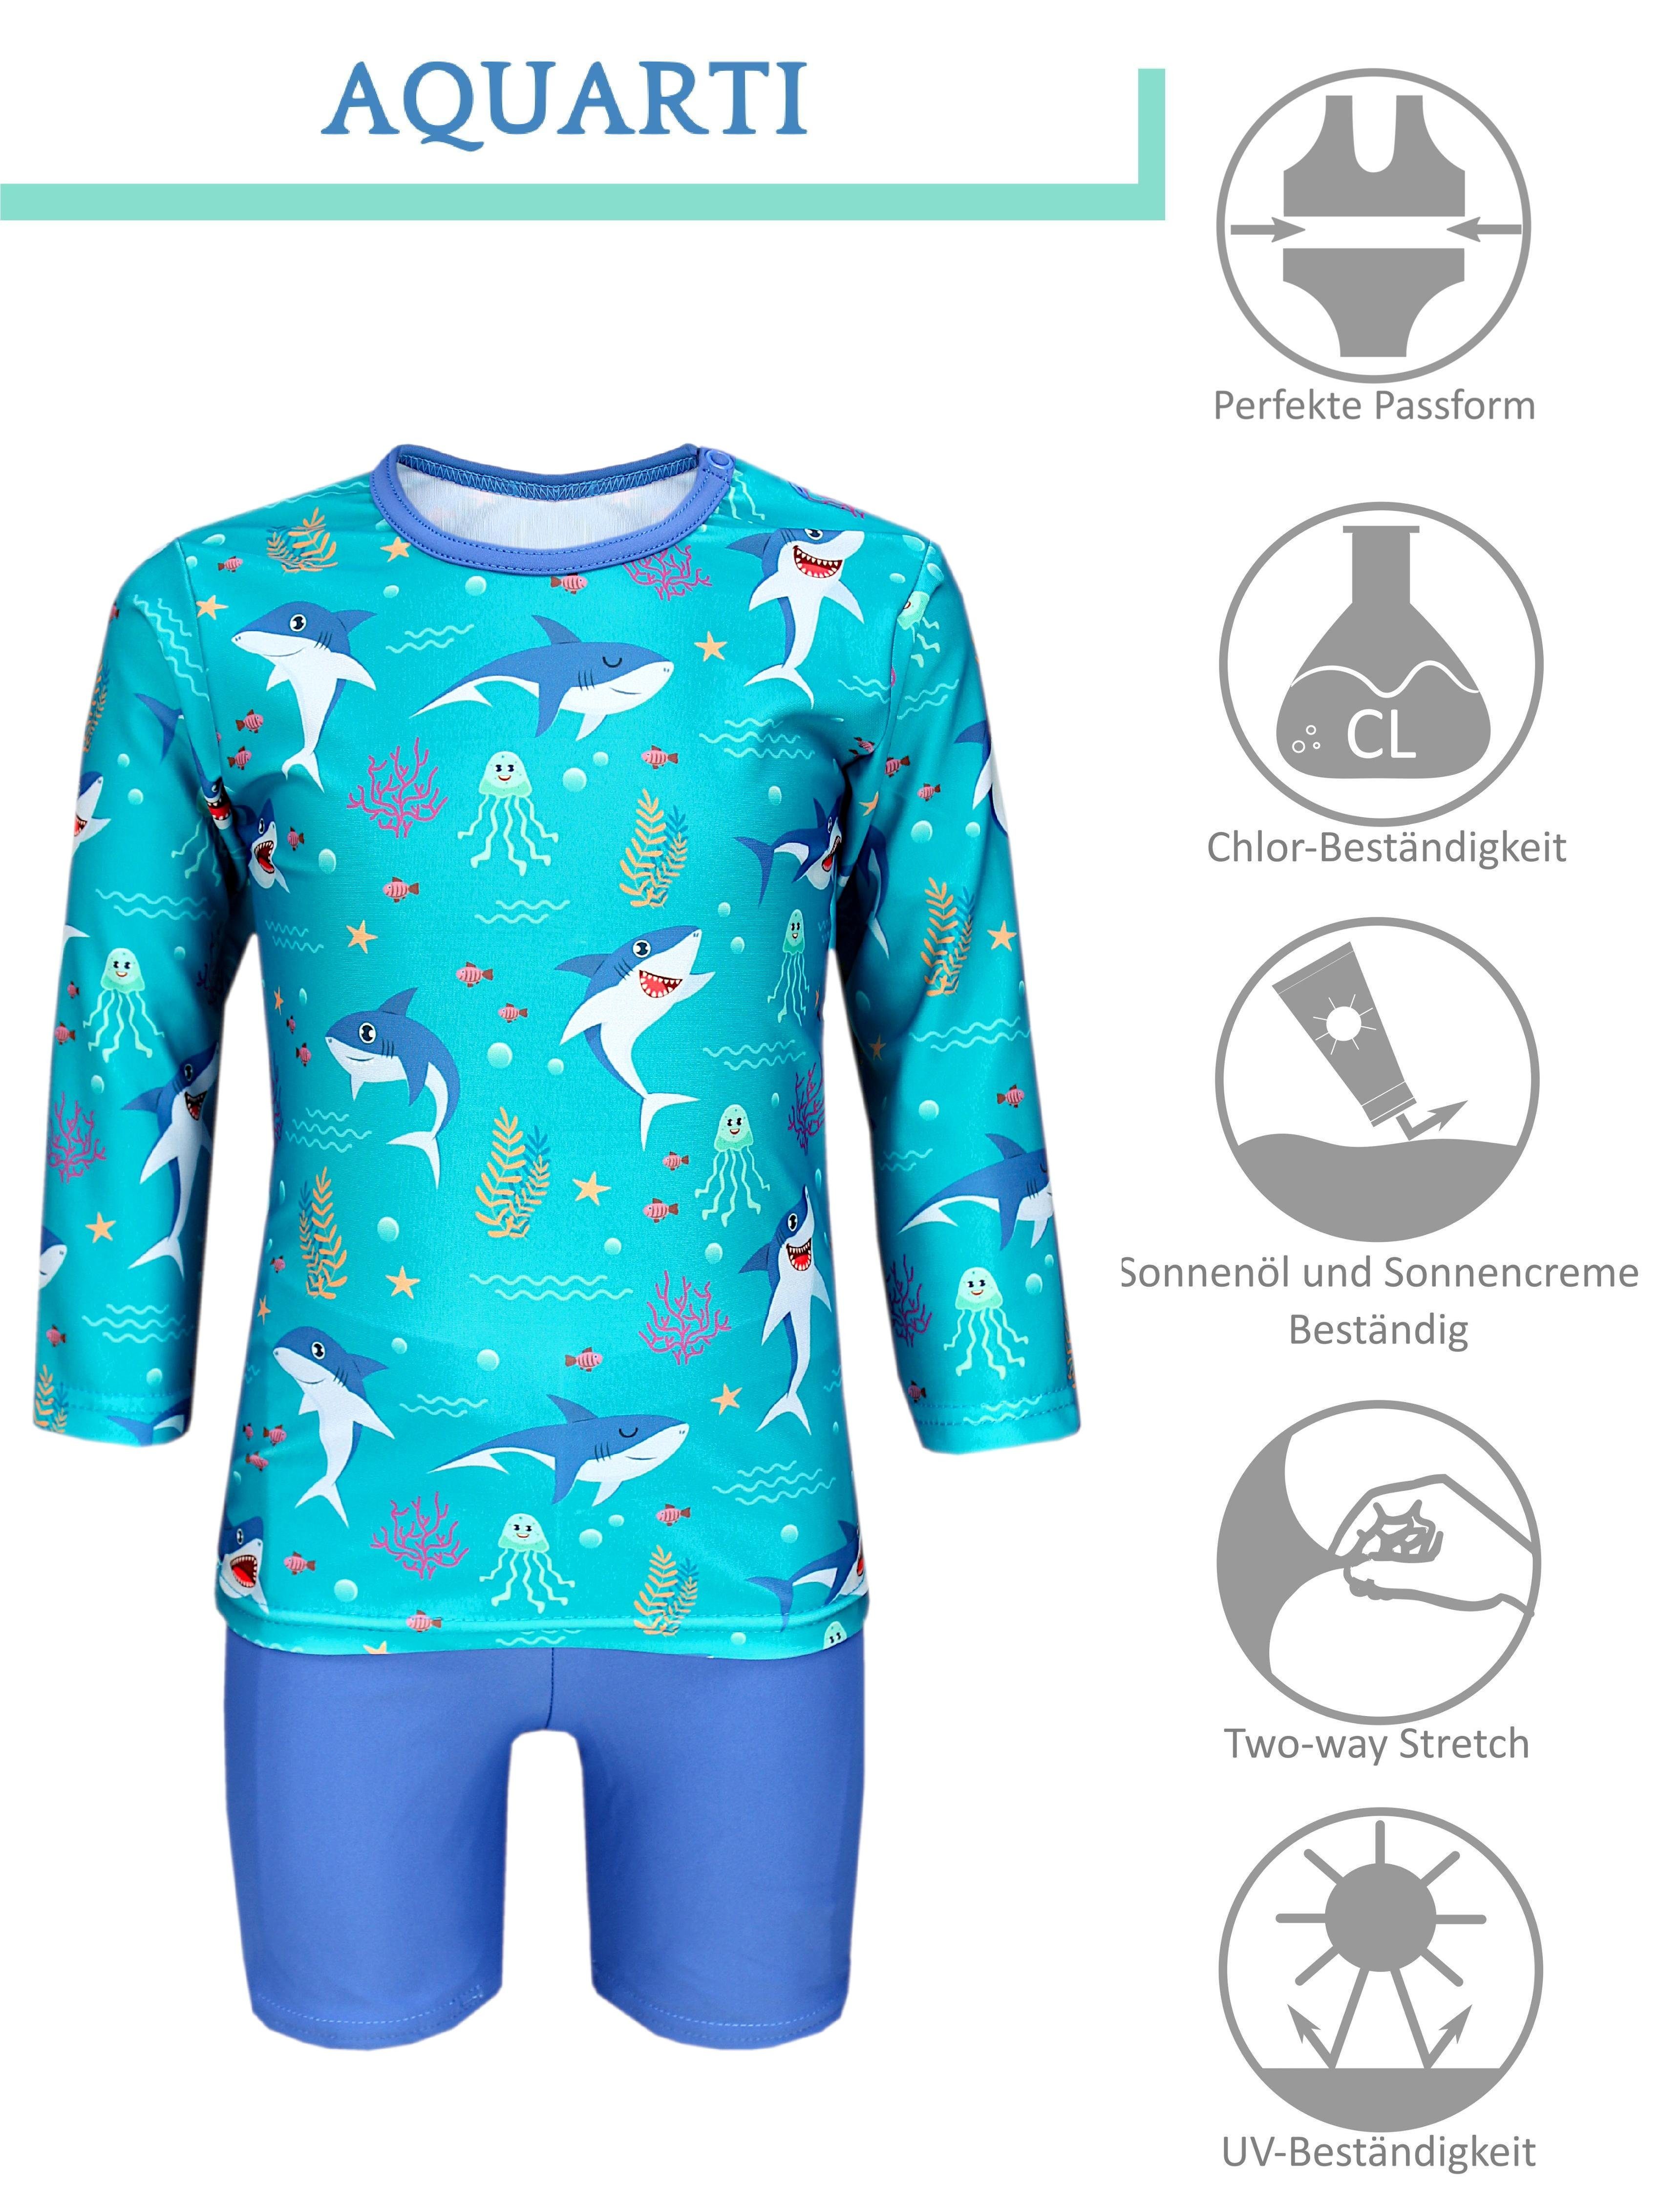 Jeans UV-Schutz Blau Baby Badeanzug Haie Meer Dunkeltürkis Badehose Jungen im / Kinder T-Shirt Zweiteiliger / Langarm Badeanzug Aquarti